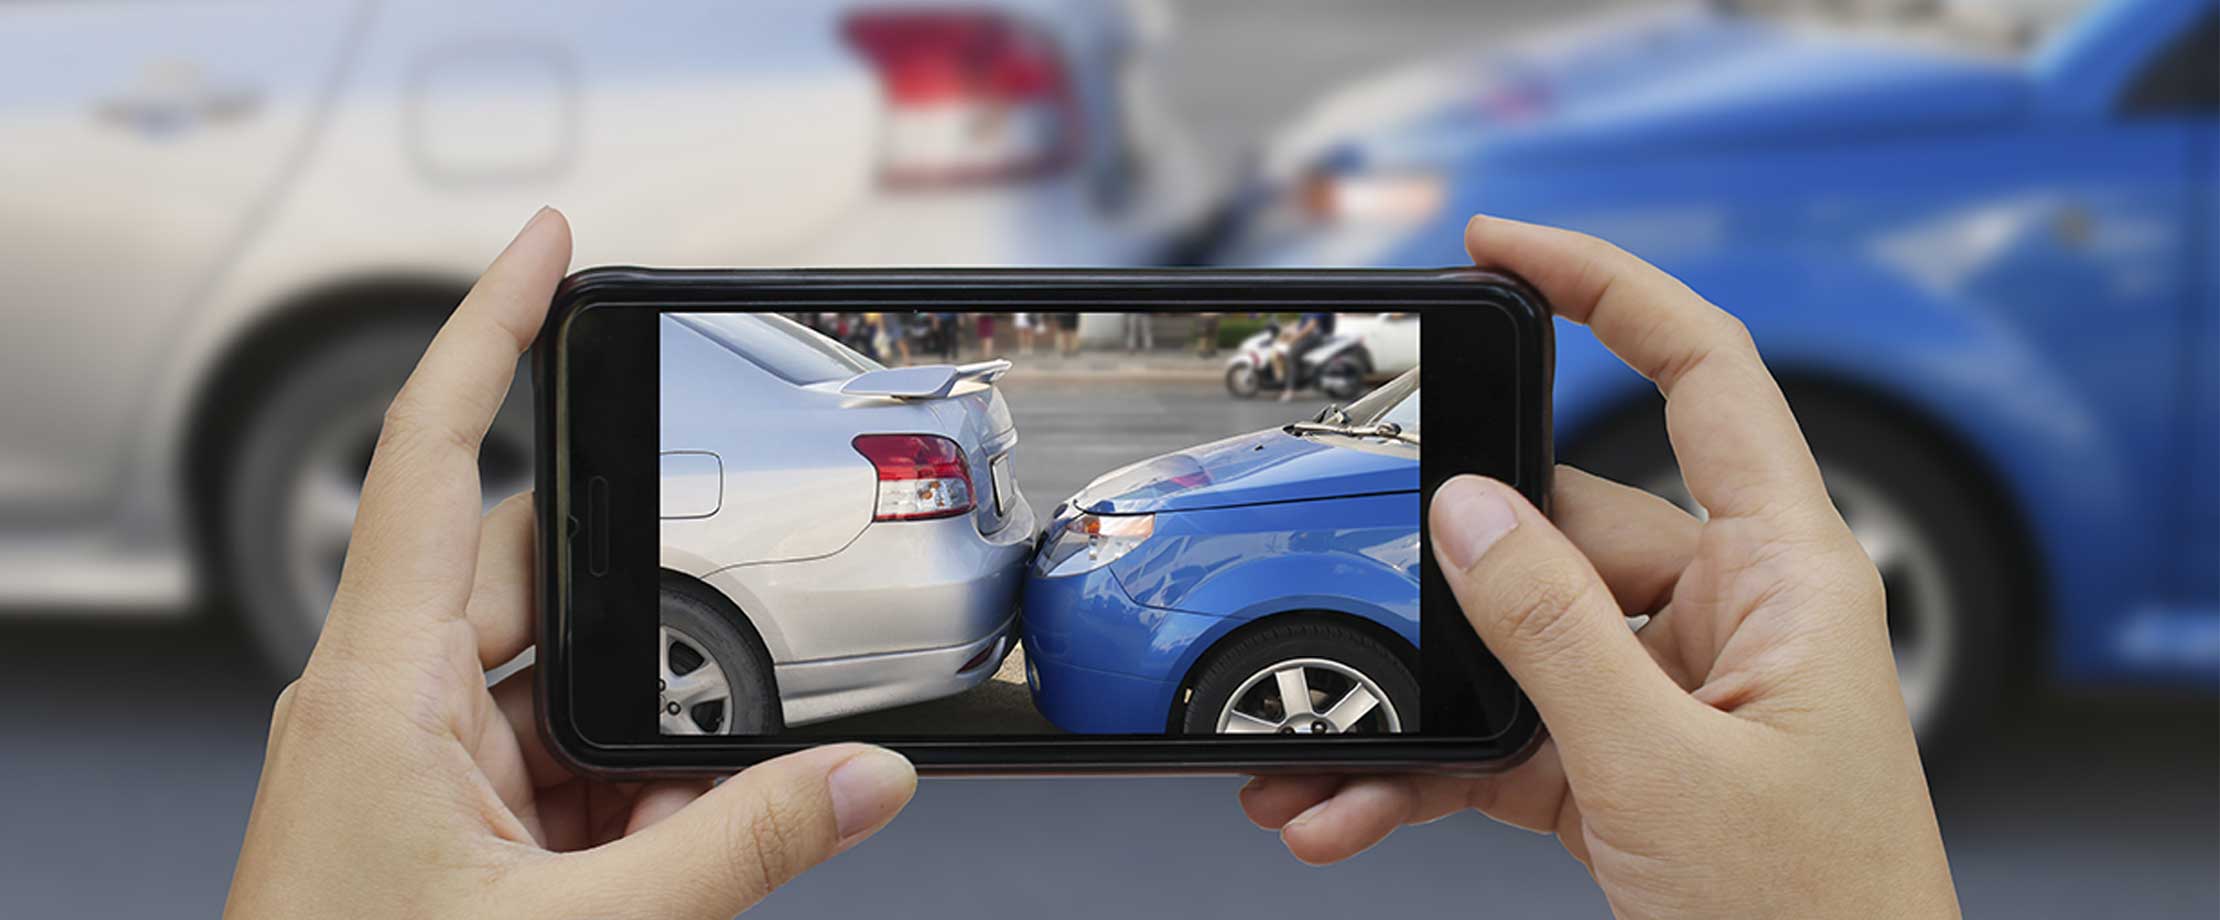 Zwei Hände halten ein Handy um ein Foto von einem Unfall zu machen. Ein blaues Auto ist auf das Heck eines silbernen Autos aufgefahren.